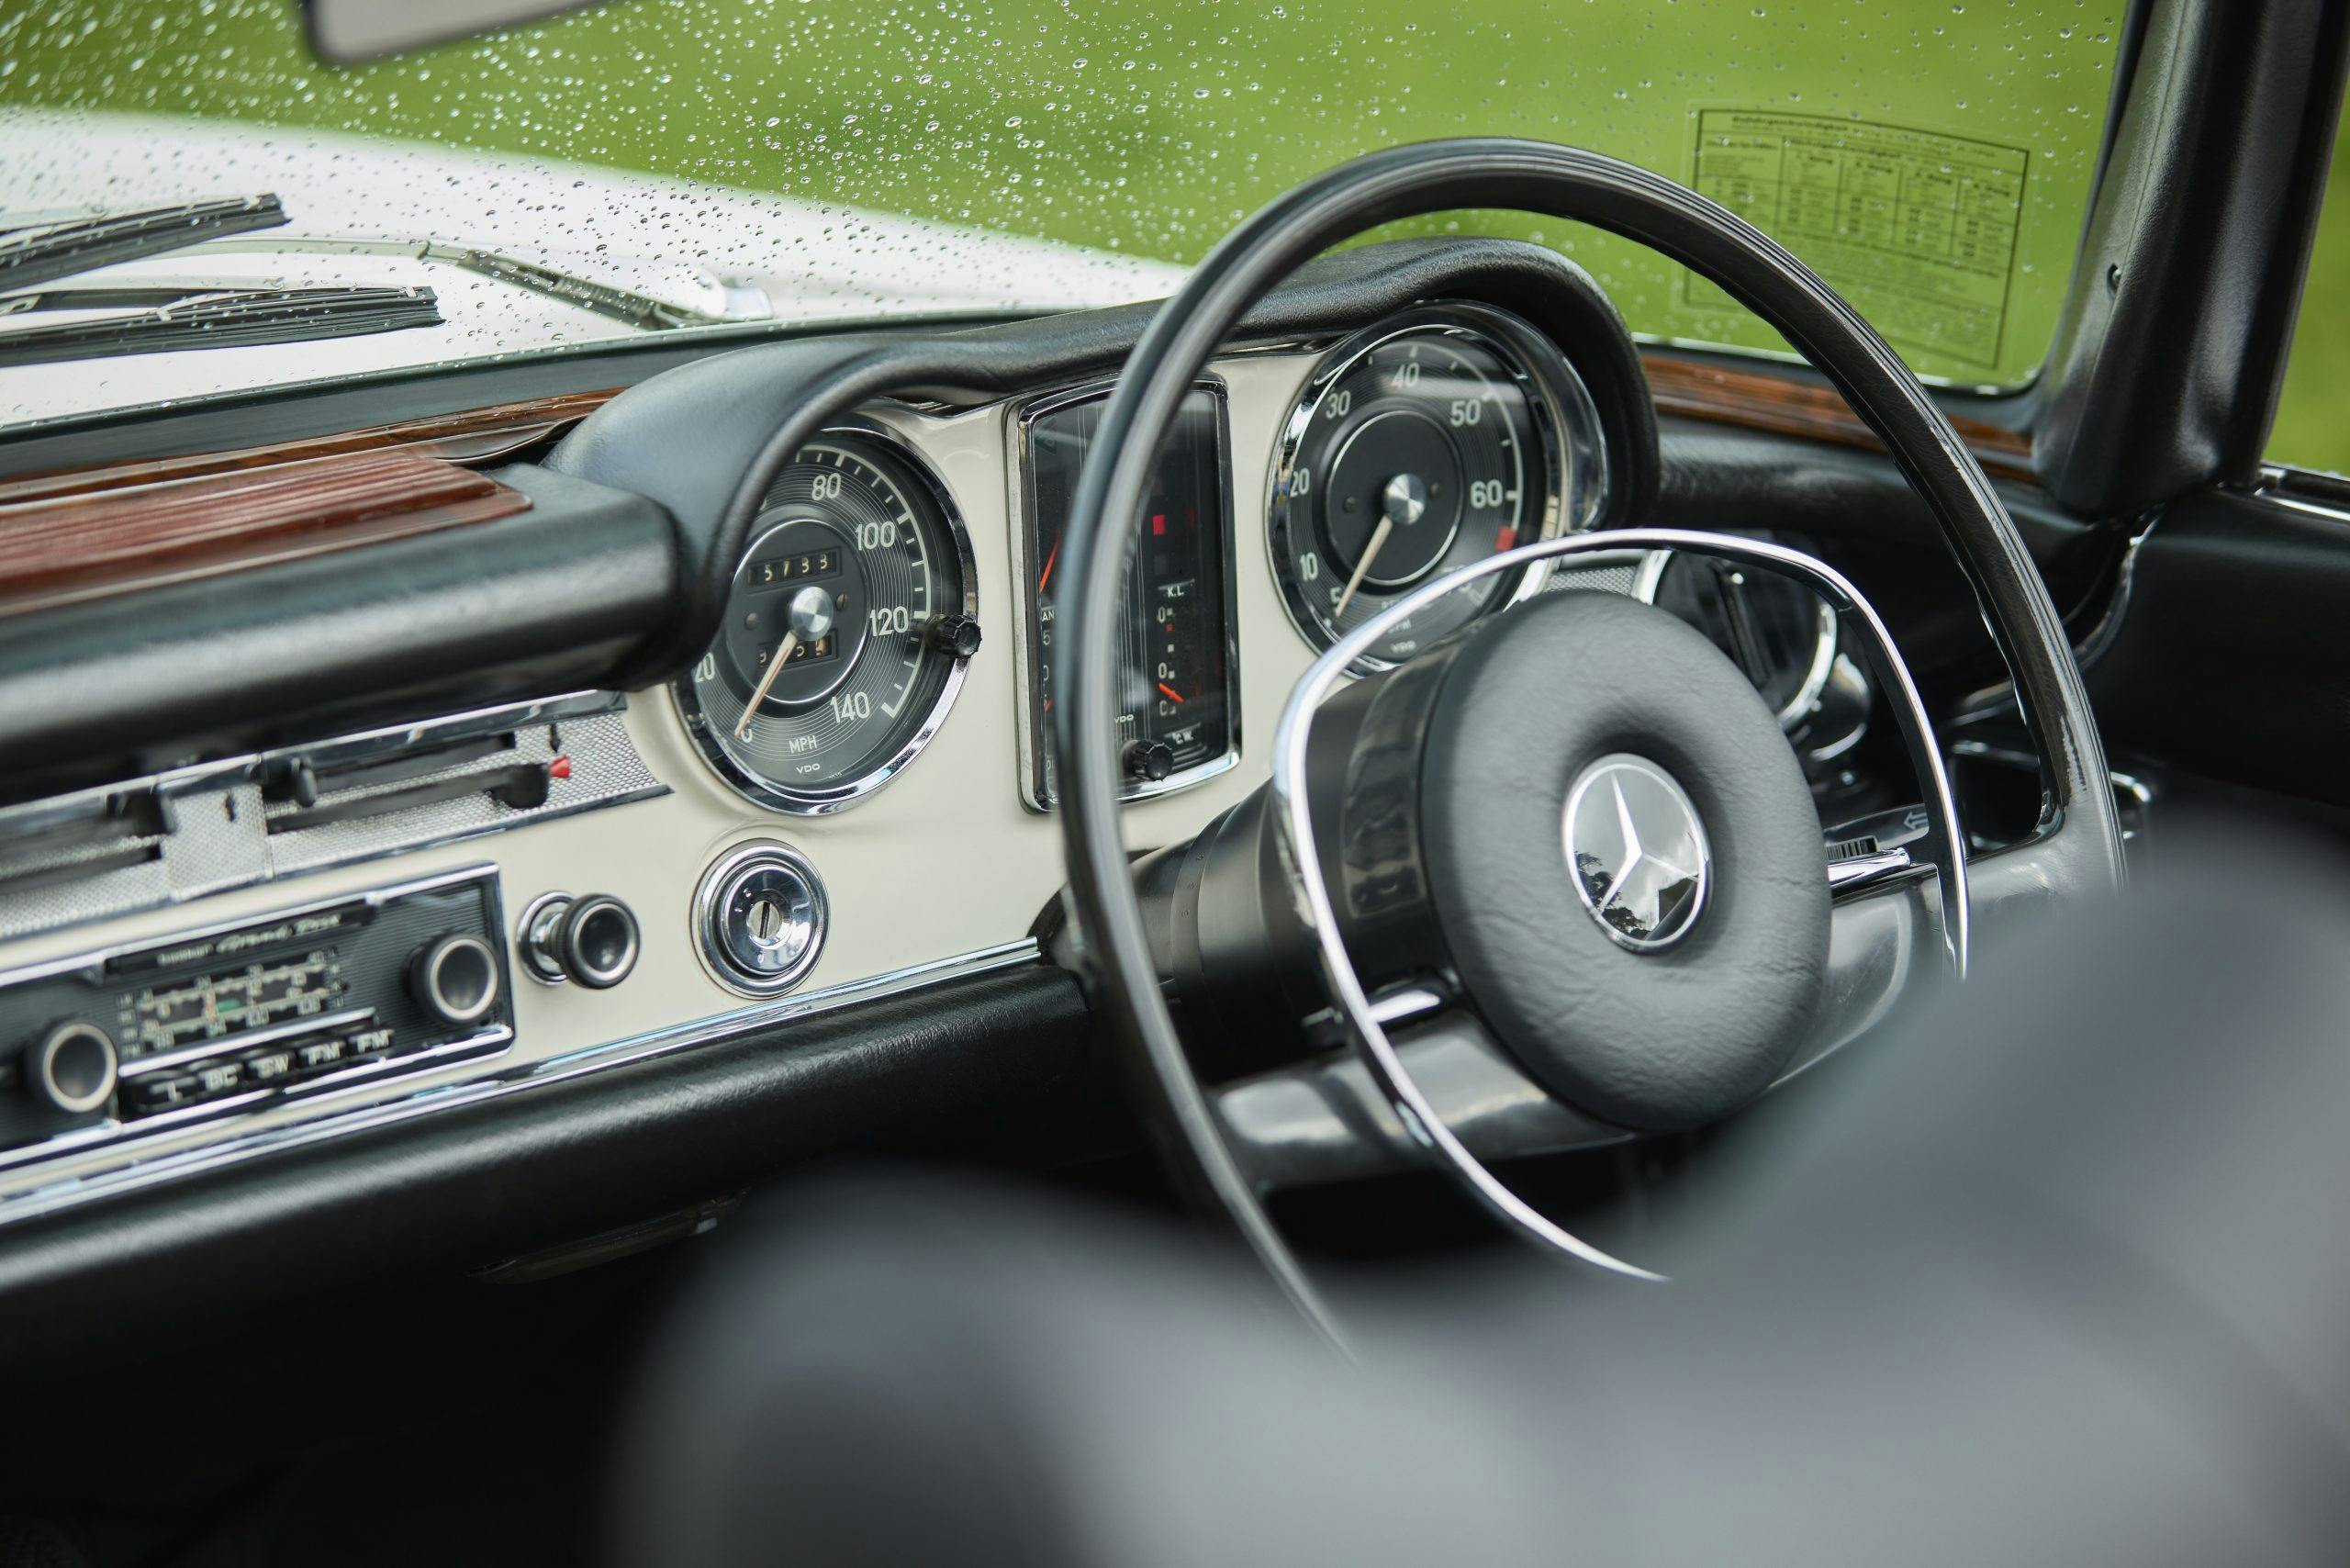 Mercedes Benz Pogoda interior steering wheel